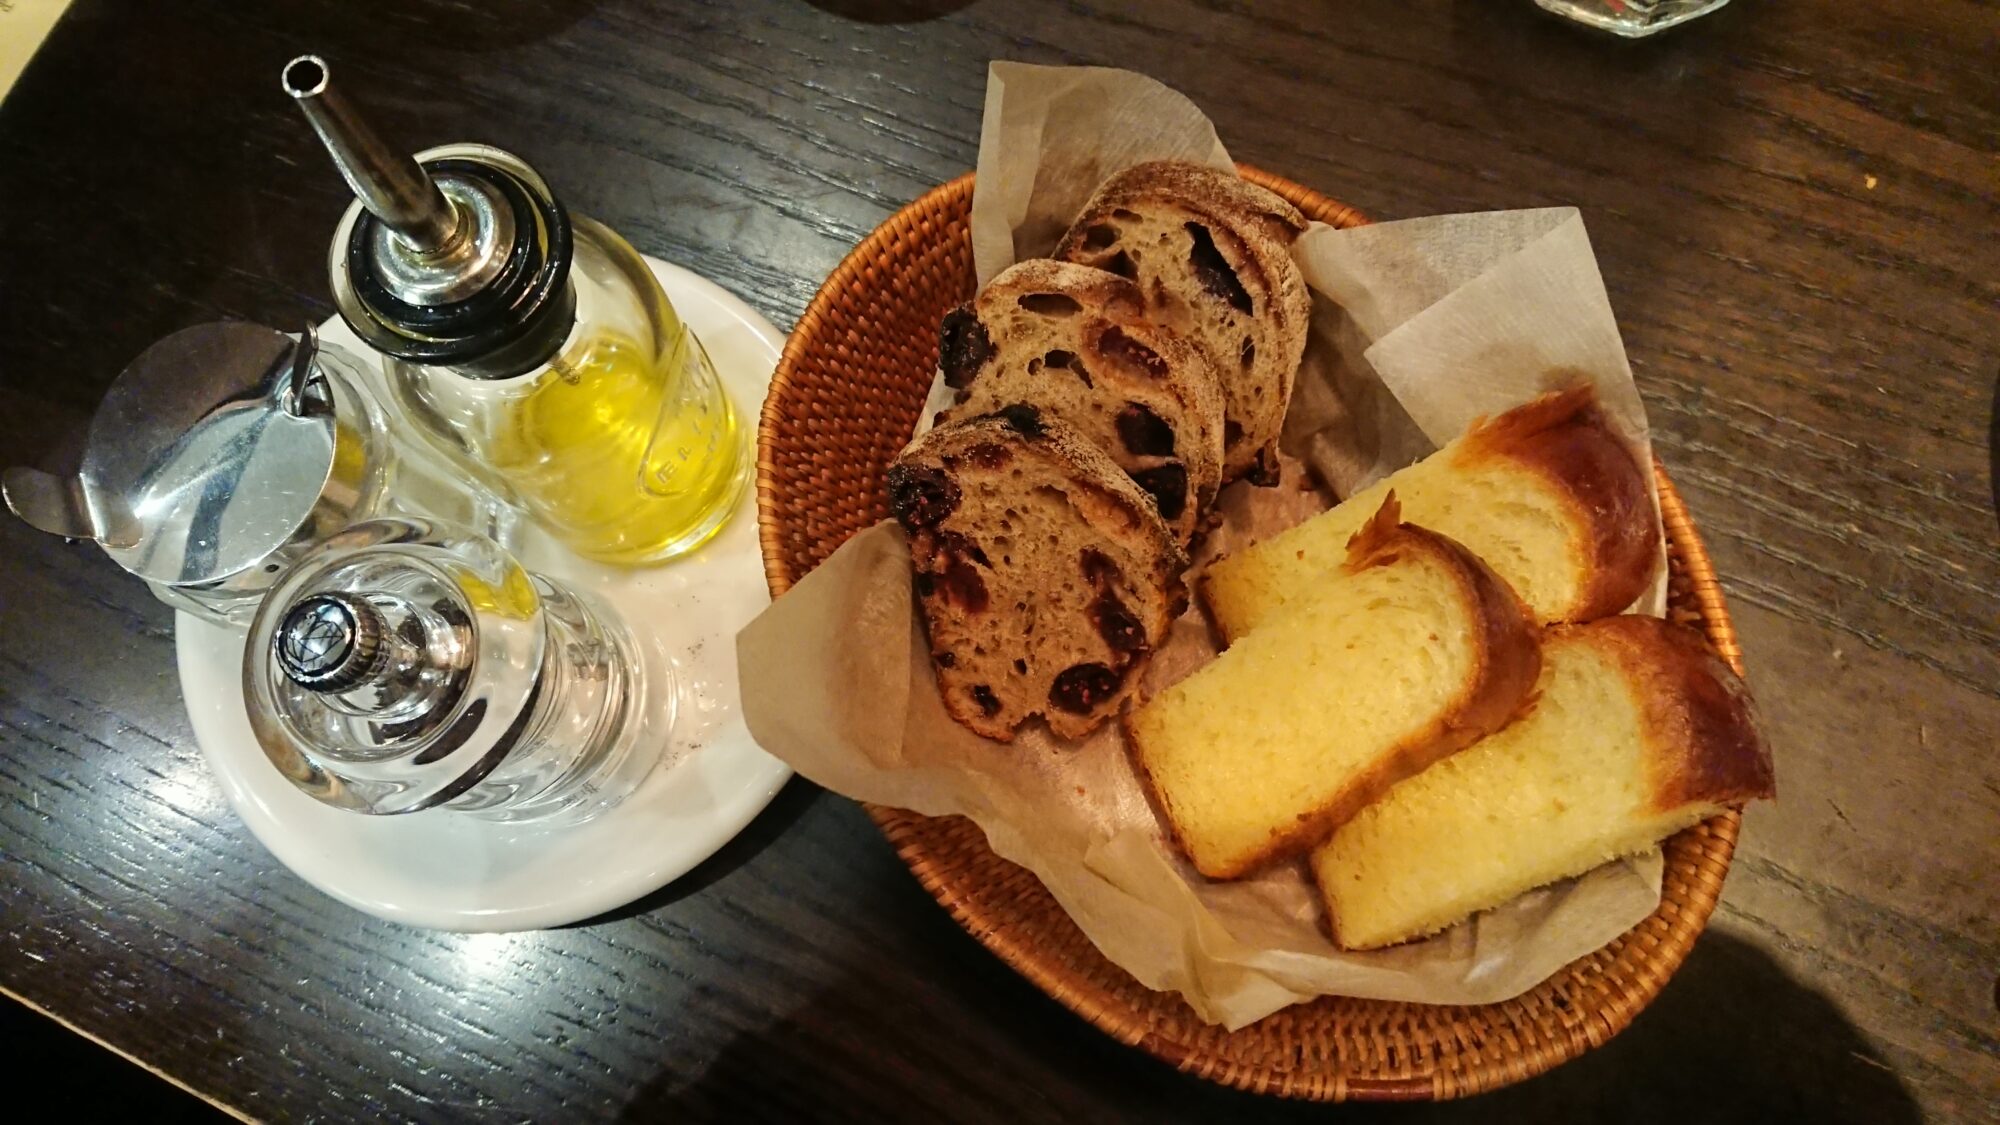 sawamura-lunch-bread